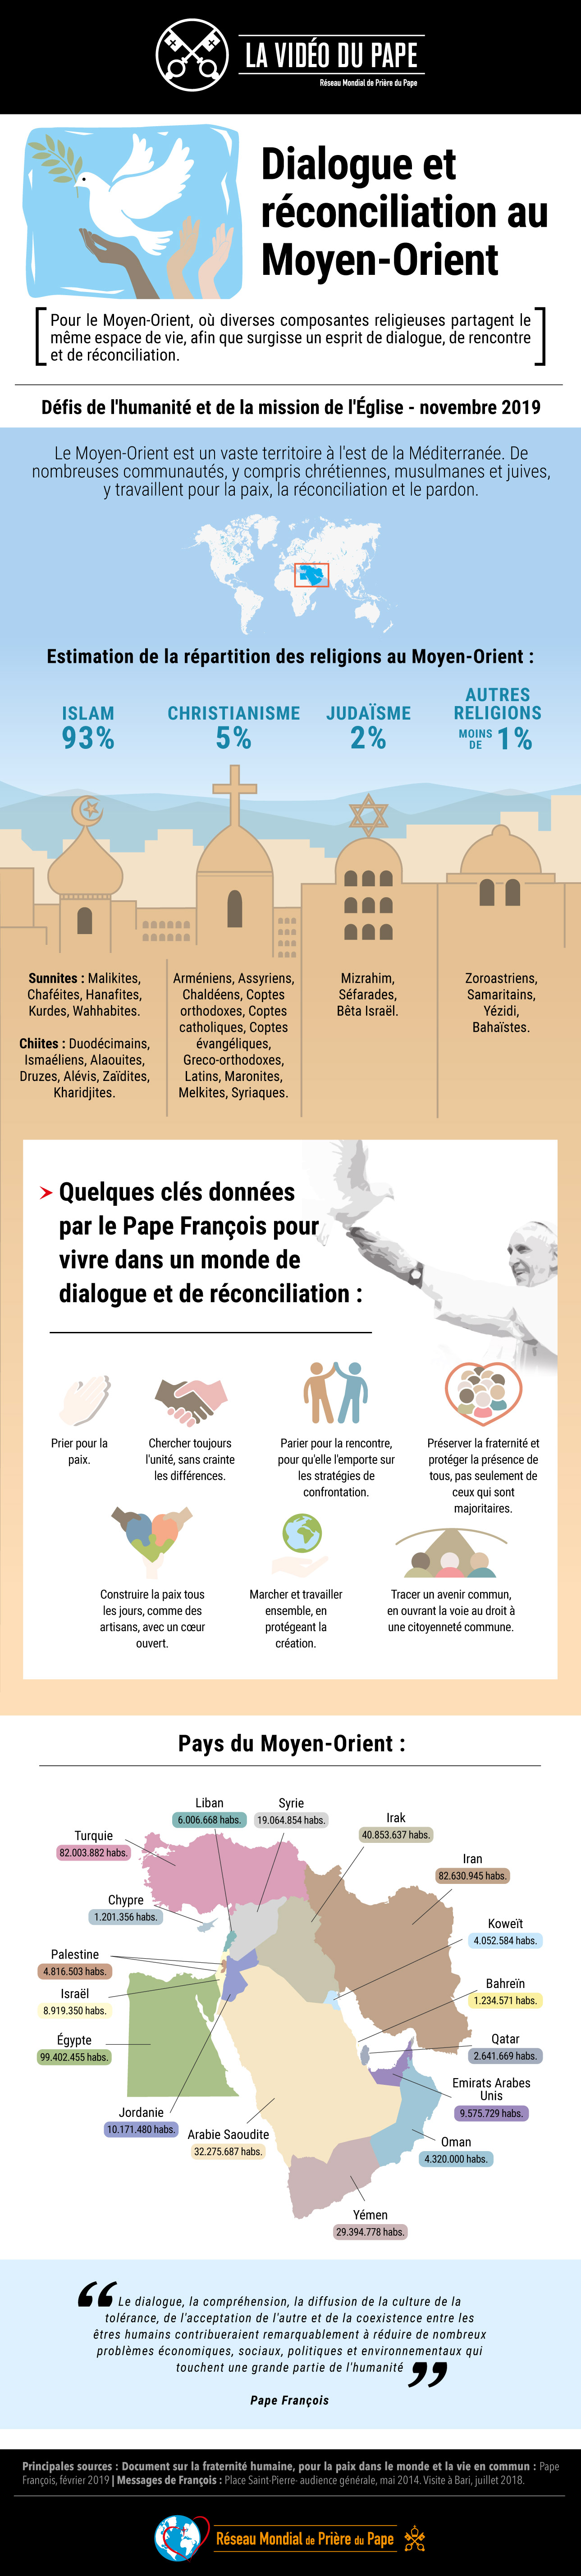 infographie-tpv-11-2019-fr-la-video-du-pape-dialogue-et-rc3a9conciliation-au-moyen-orient.jpg